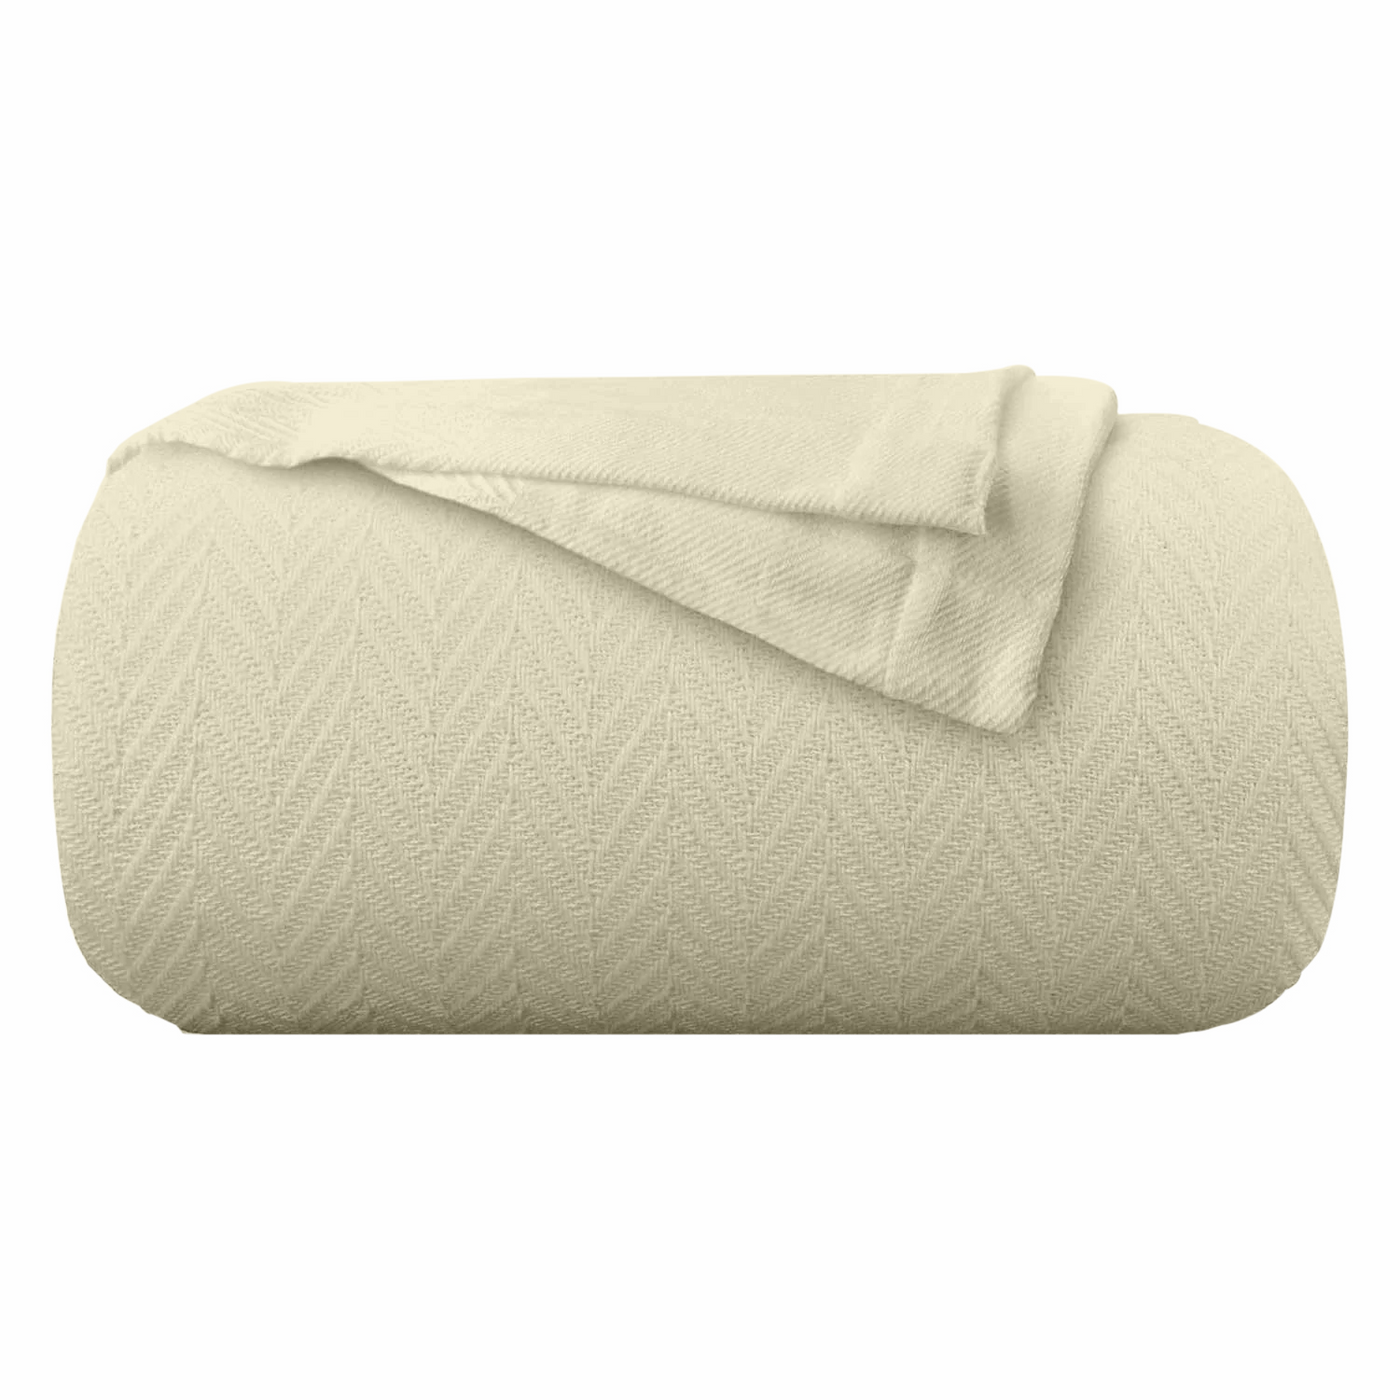 Herringbone Weave Handwoven Blanket - Ivory